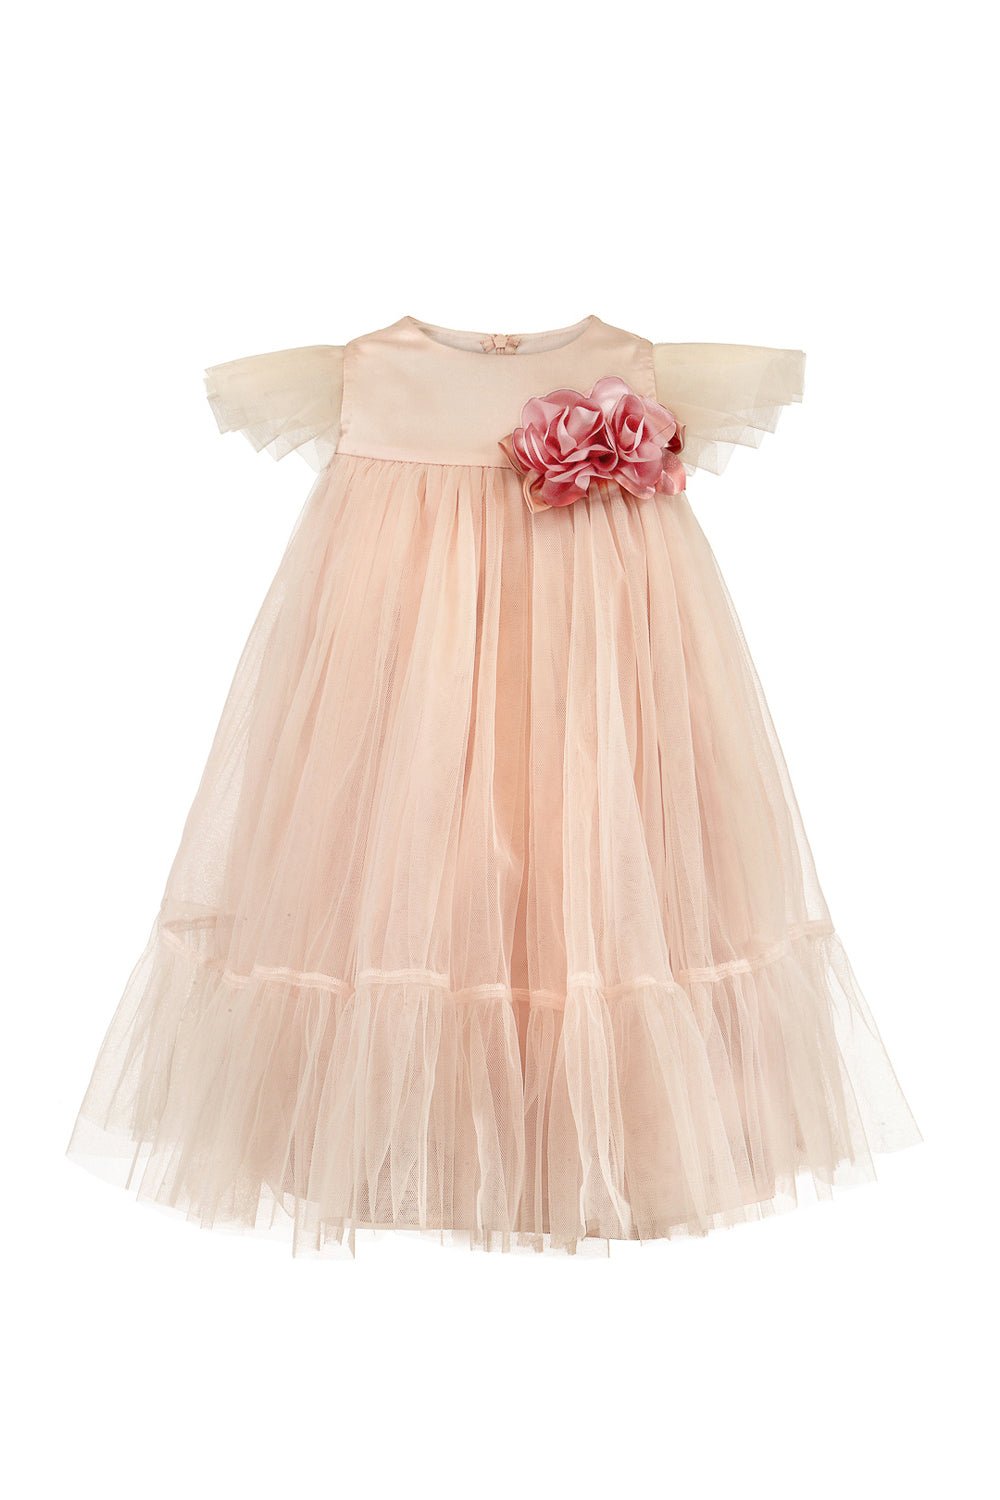 Soft Pink Net Overlay Dress